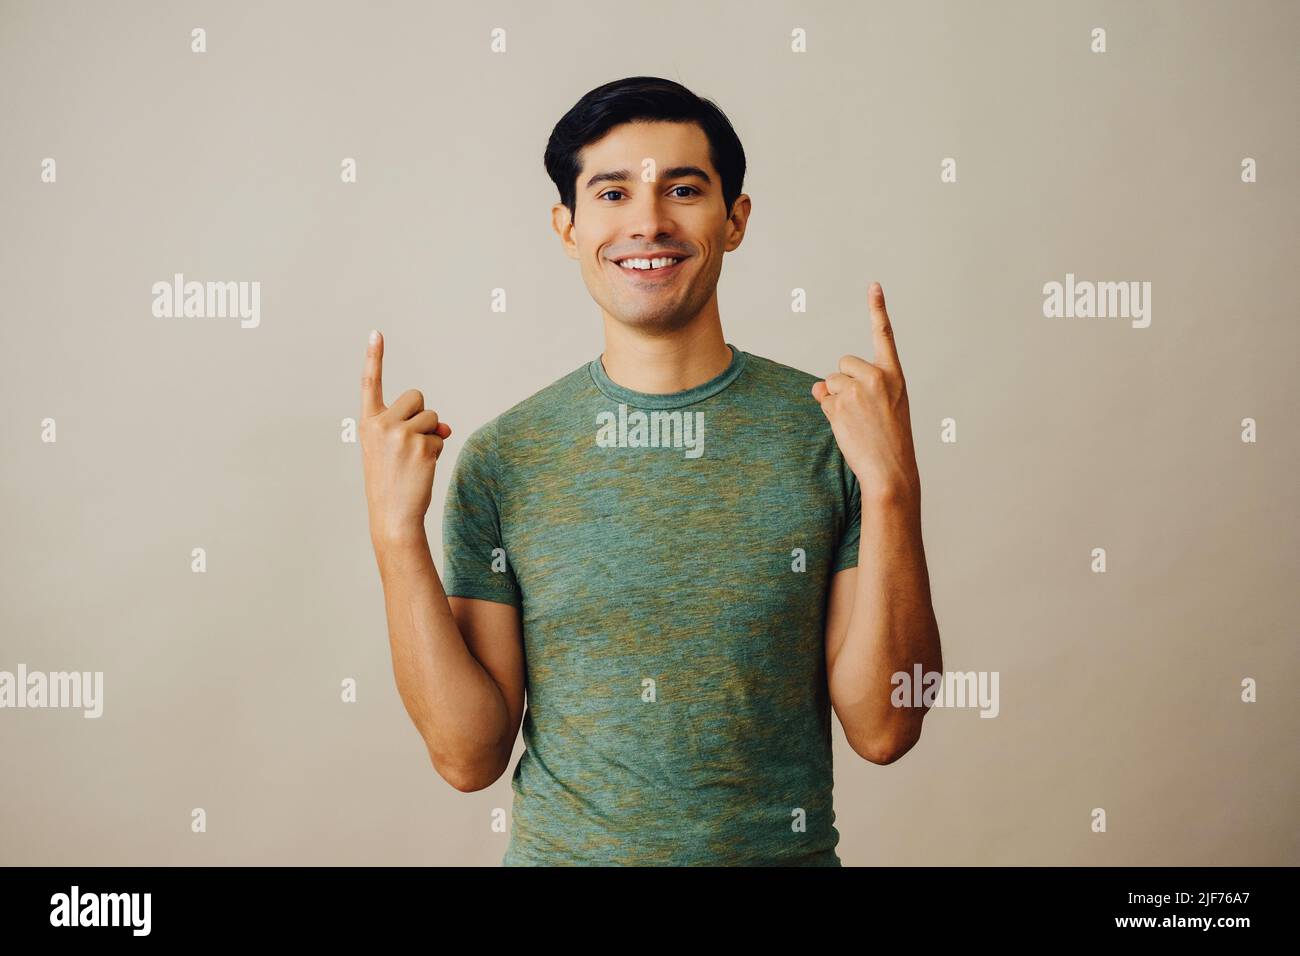 Portrait hispanique latino homme pointant vers le haut cheveux noirs souriant beau jeune adulte vert t-shirt sur fond gris regardant la prise de vue en studio Banque D'Images